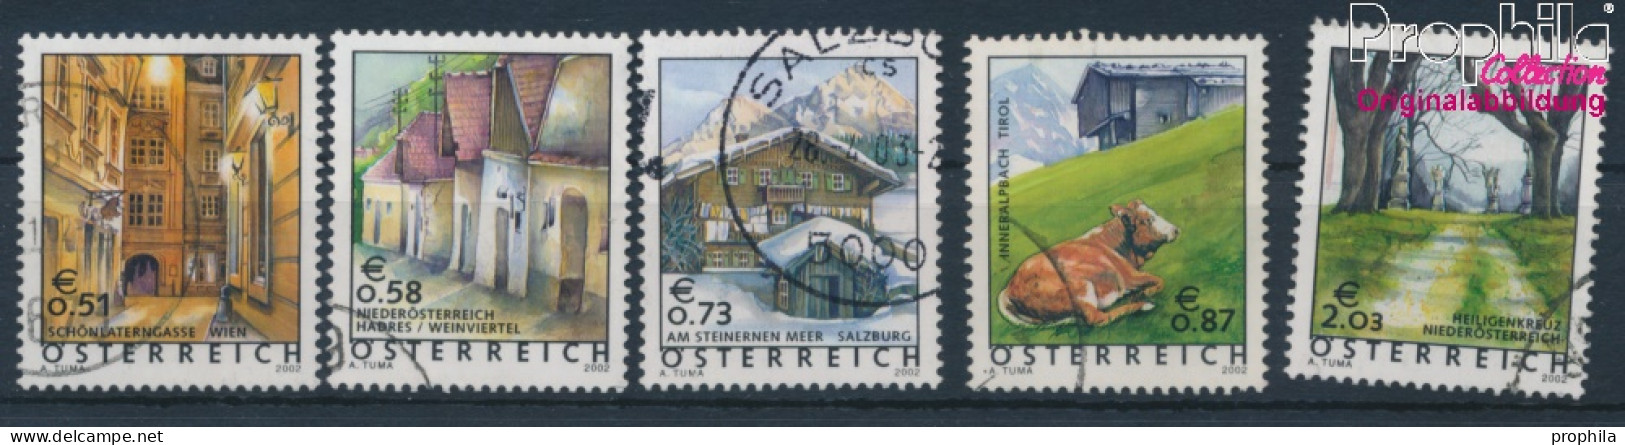 Österreich 2363-2367 (kompl.Ausg.) Gestempelt 2002 Freimarken (10404375 - Gebruikt